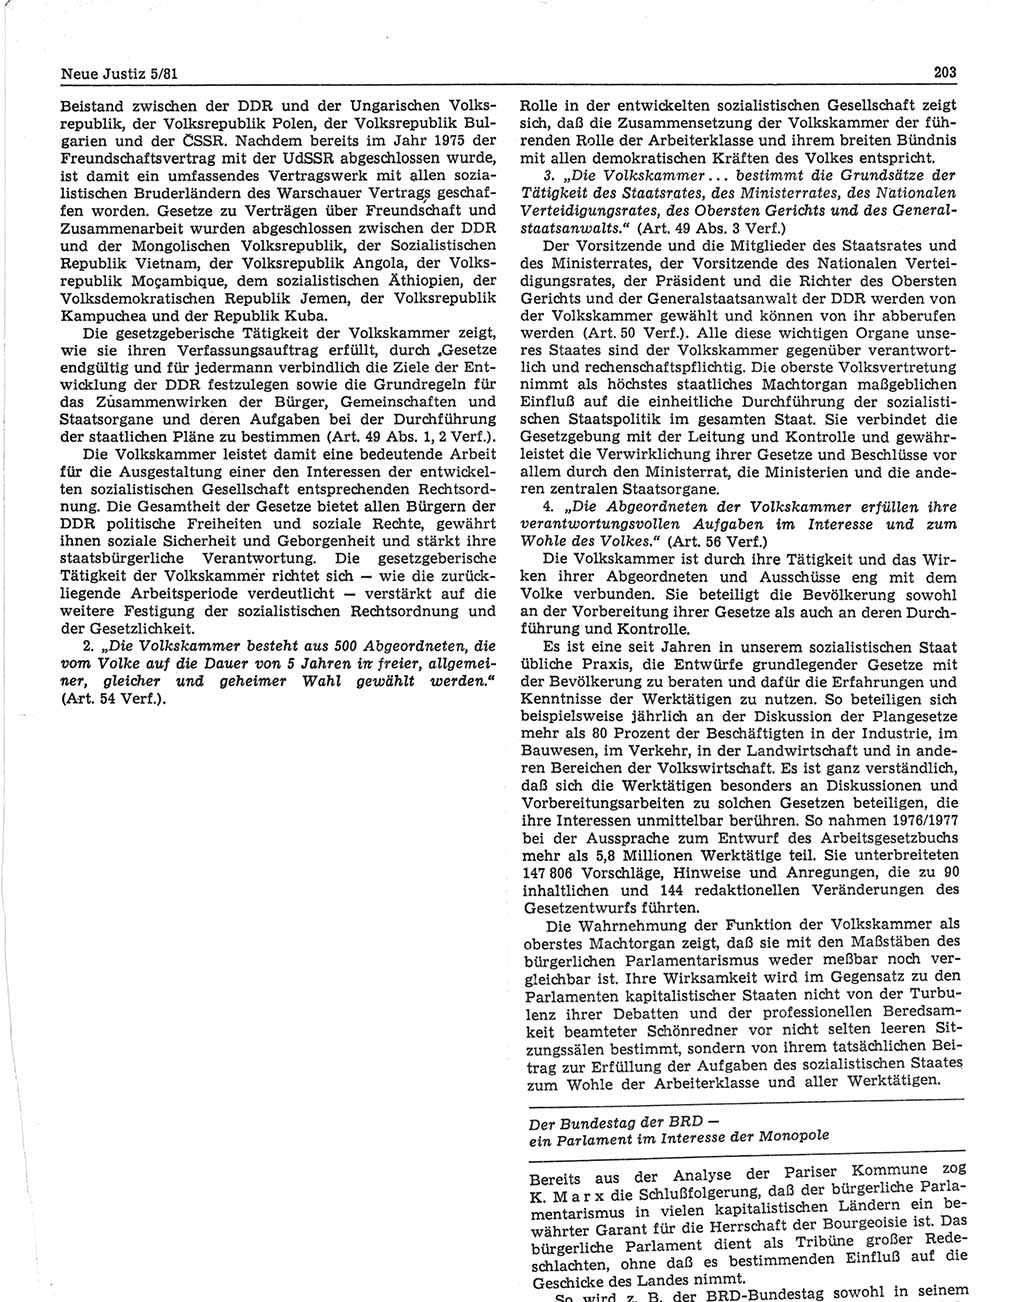 Neue Justiz (NJ), Zeitschrift für sozialistisches Recht und Gesetzlichkeit [Deutsche Demokratische Republik (DDR)], 35. Jahrgang 1981, Seite 203 (NJ DDR 1981, S. 203)